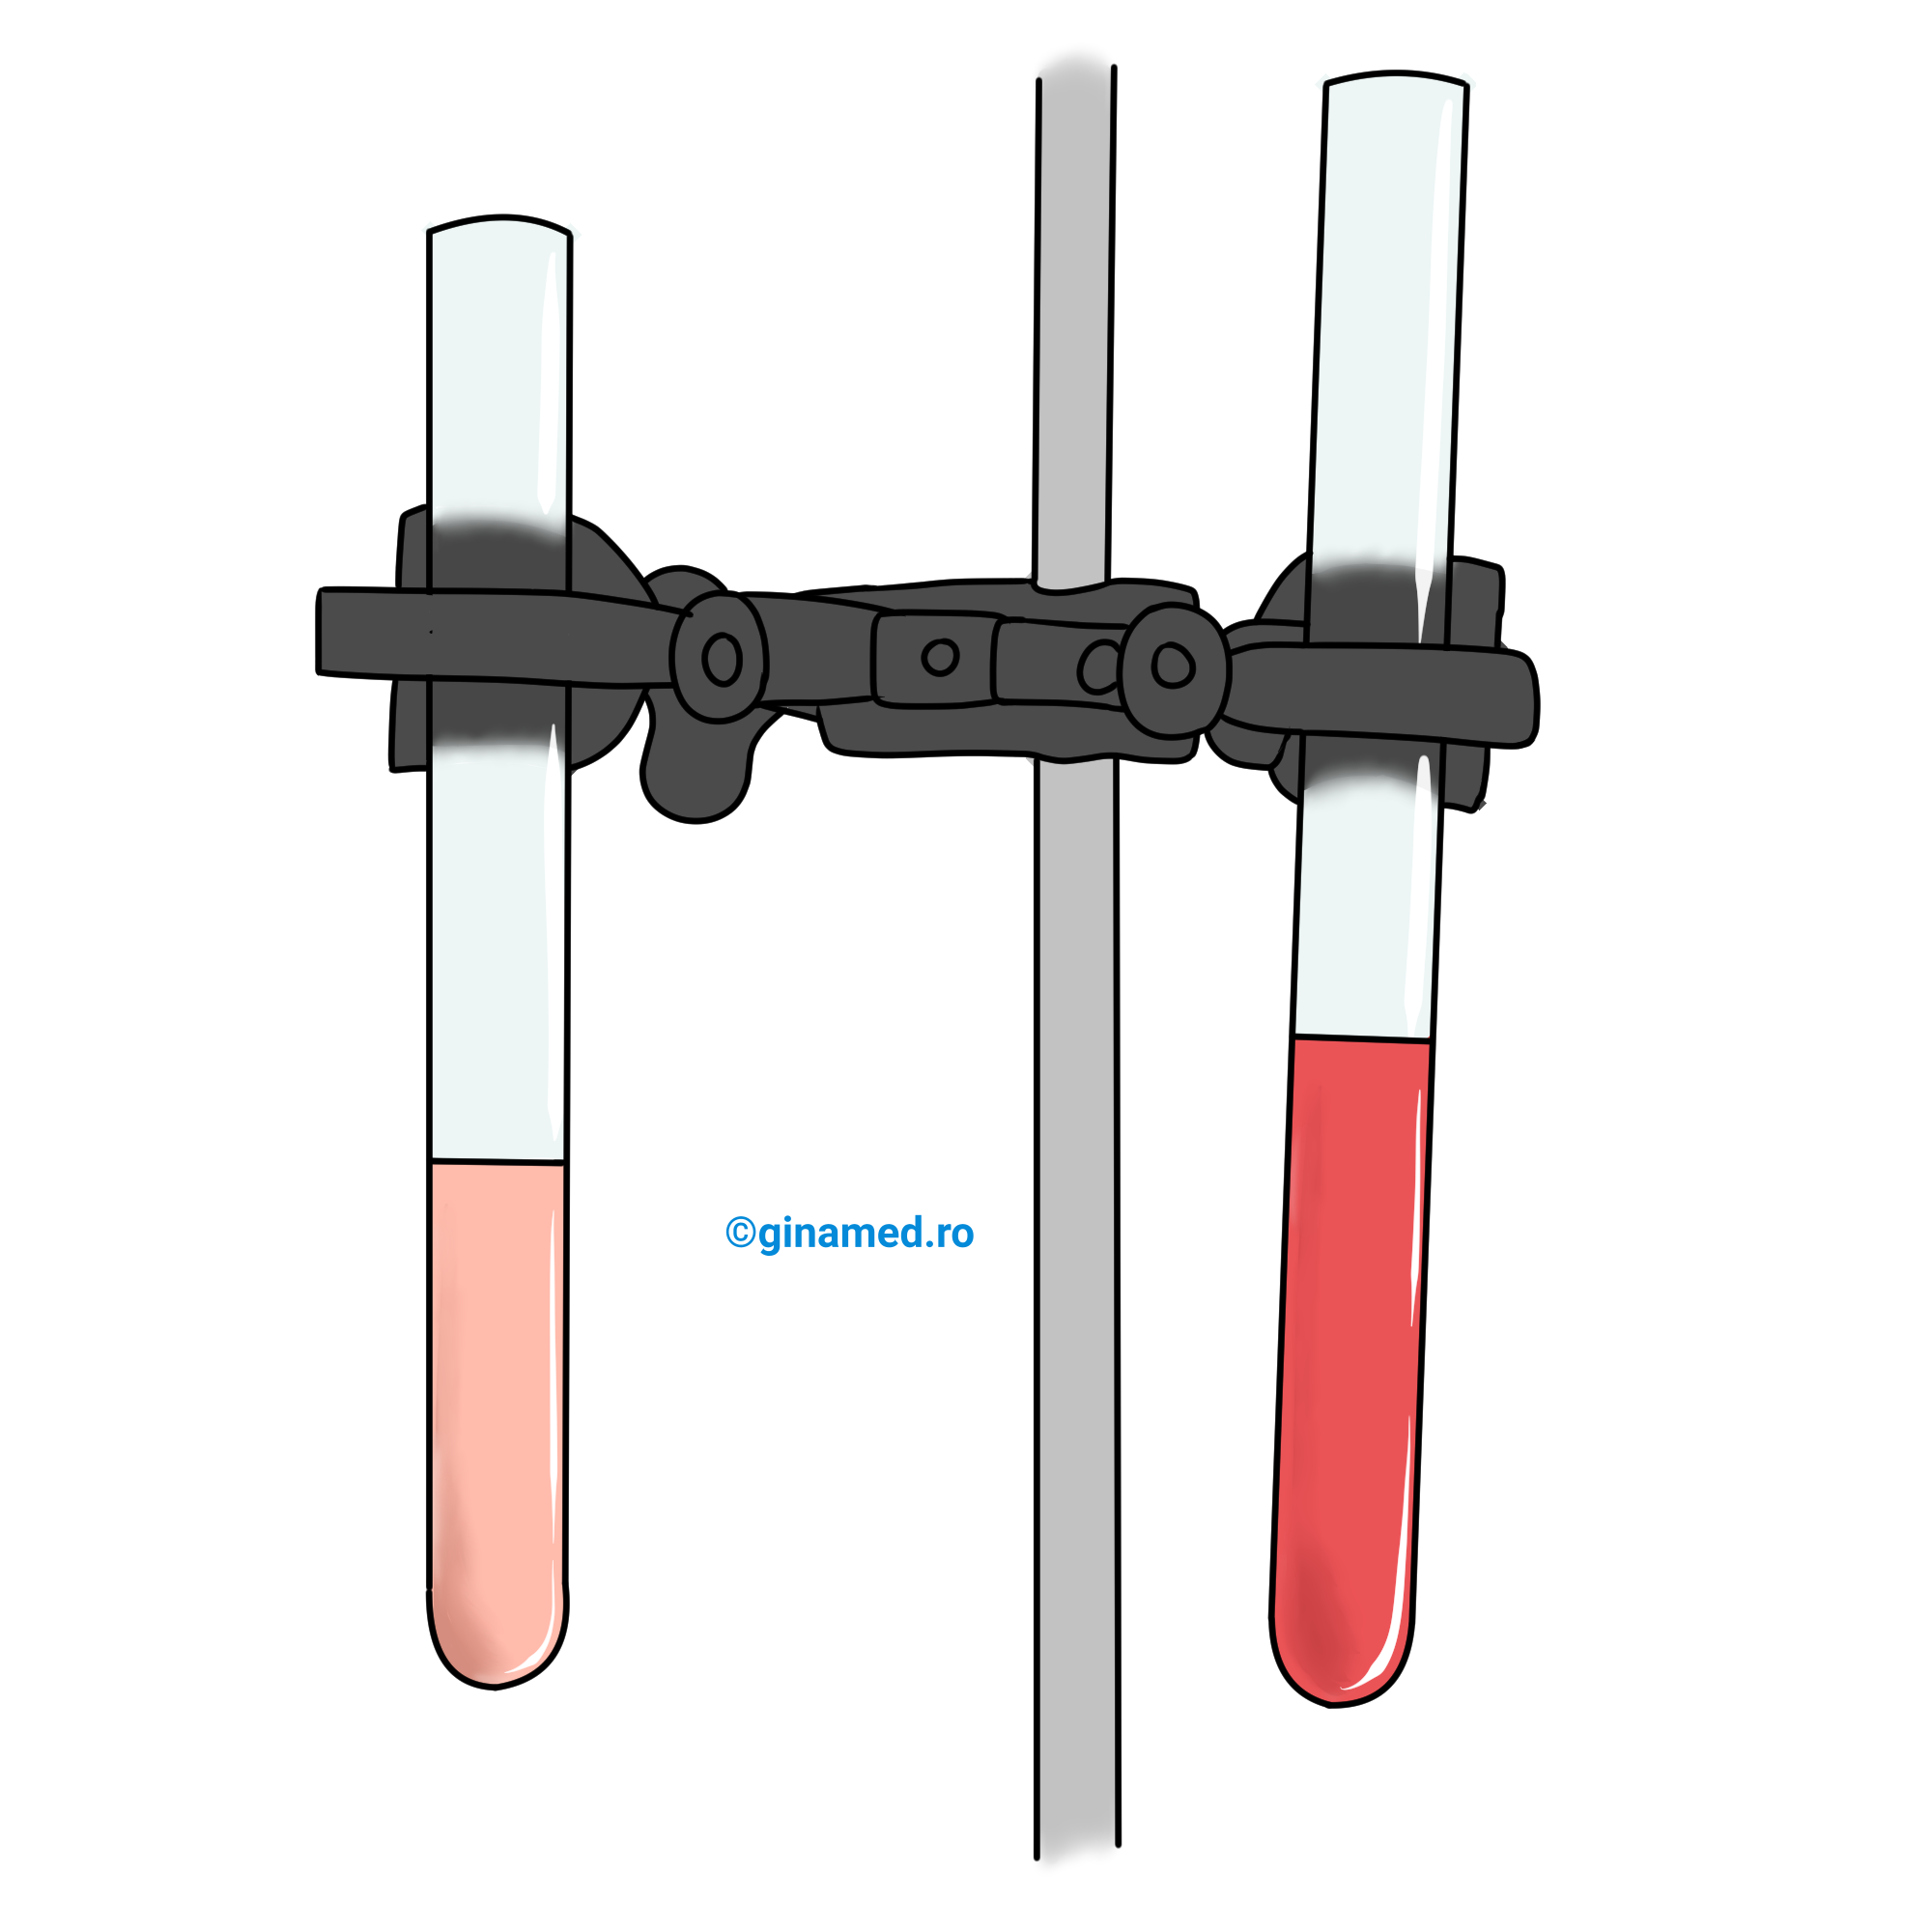 Culoarea indicatorului roșu de metil introdus în eprubeta din stânga la începutul experimentului - proba conține etanol. Culoarea indicatorului roșu de metil după ce a avut loc fermentația acetică - proba conține acid acetic, în eprubeta din dreapta.